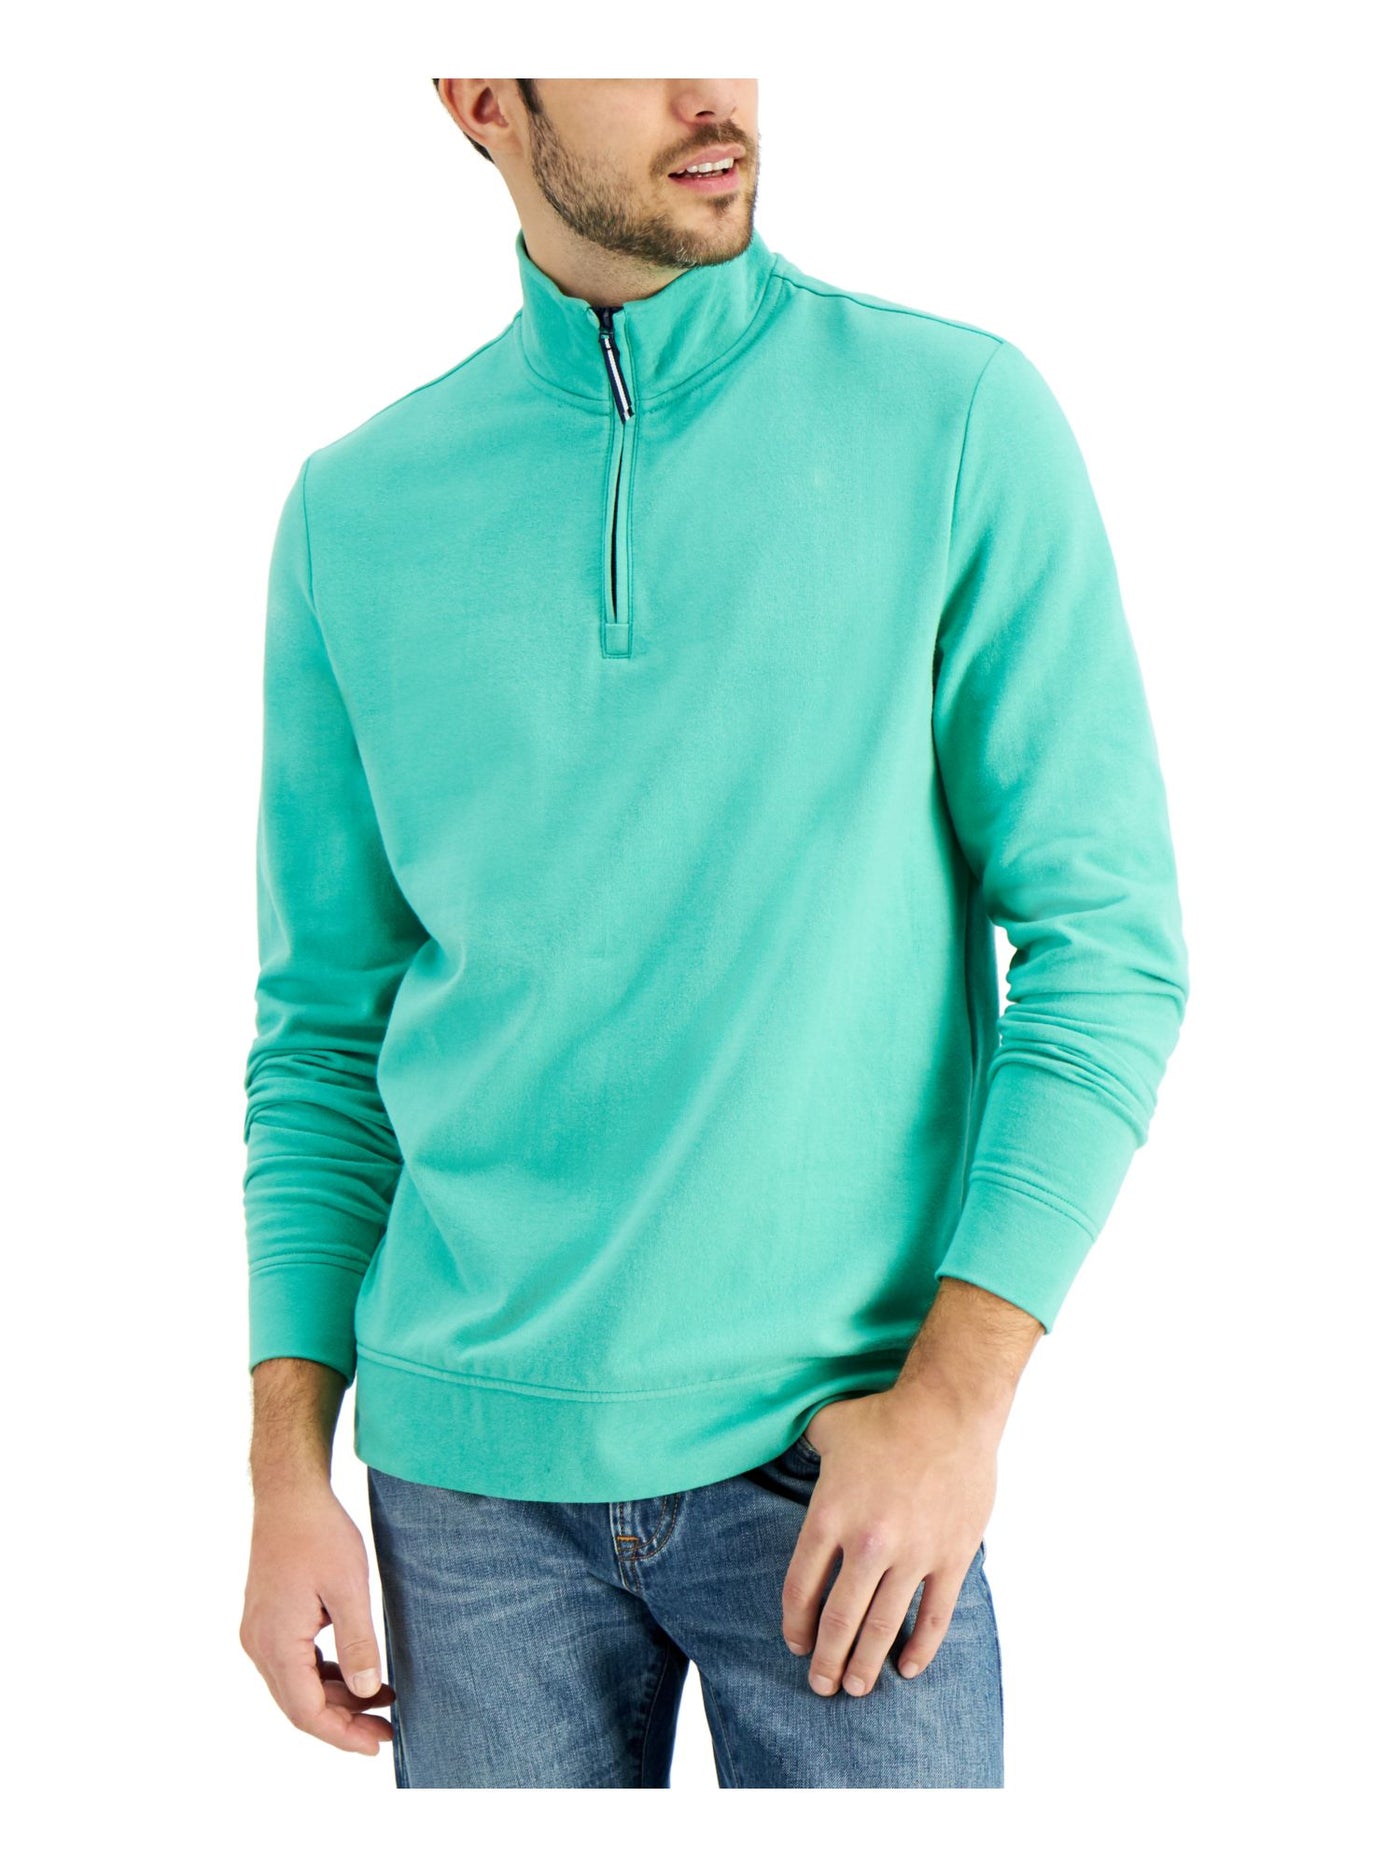 CLUBROOM Mens Aqua Mock Neck Classic Fit Quarter-Zip Fleece Sweatshirt M